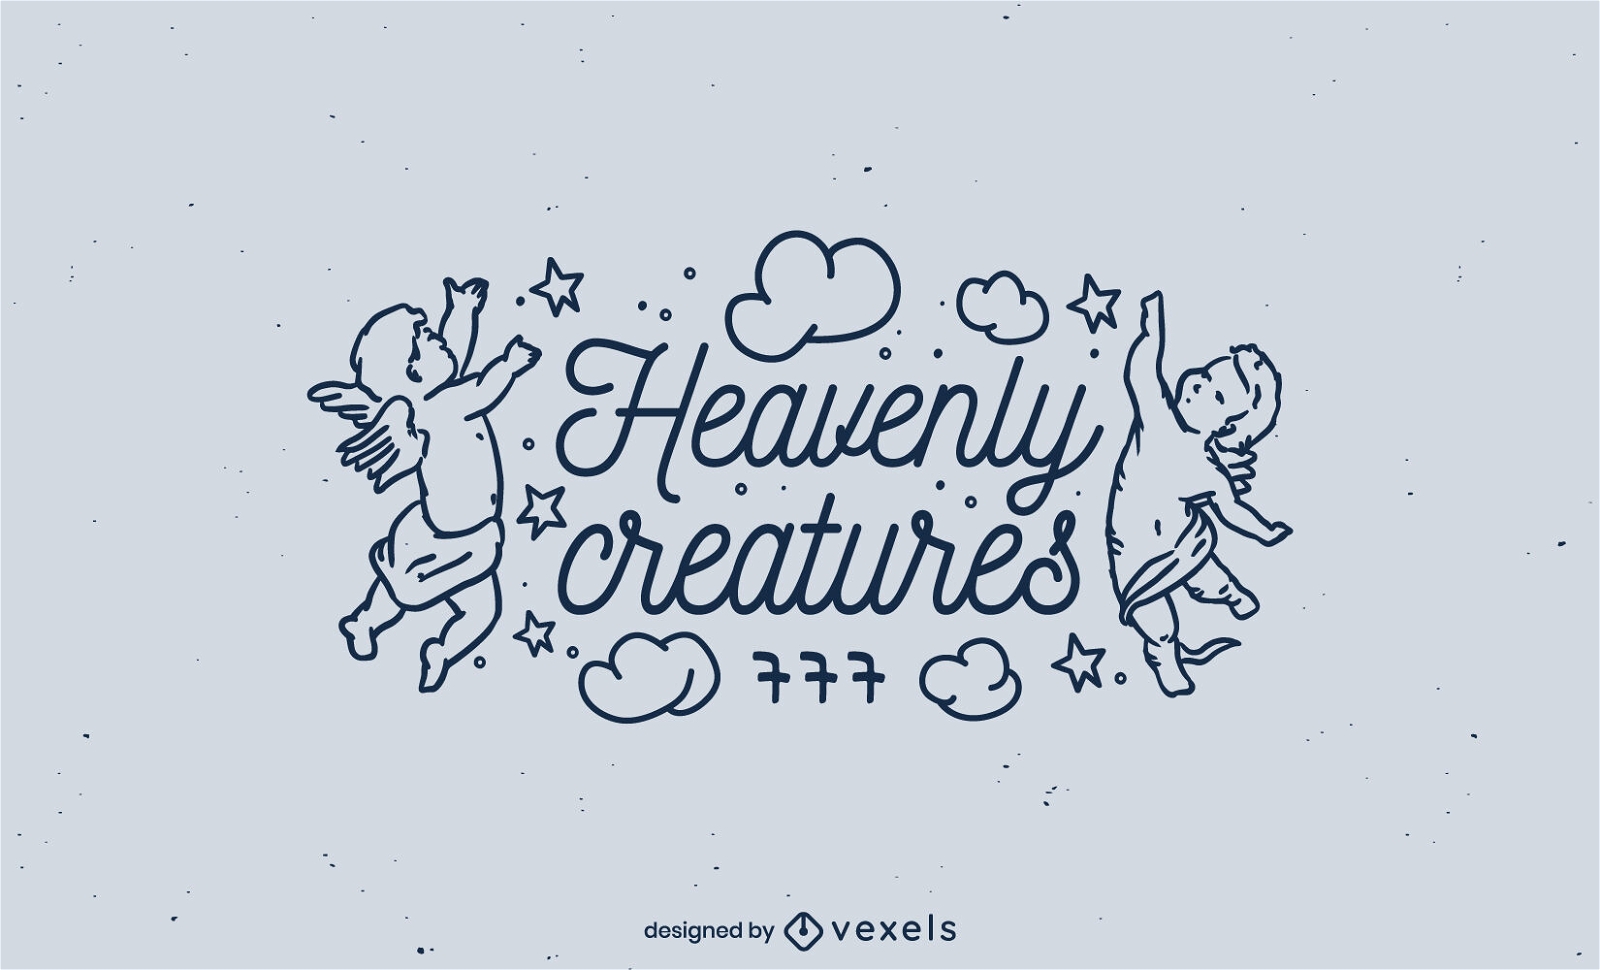 Anjos bebês voando no design do logotipo do céu